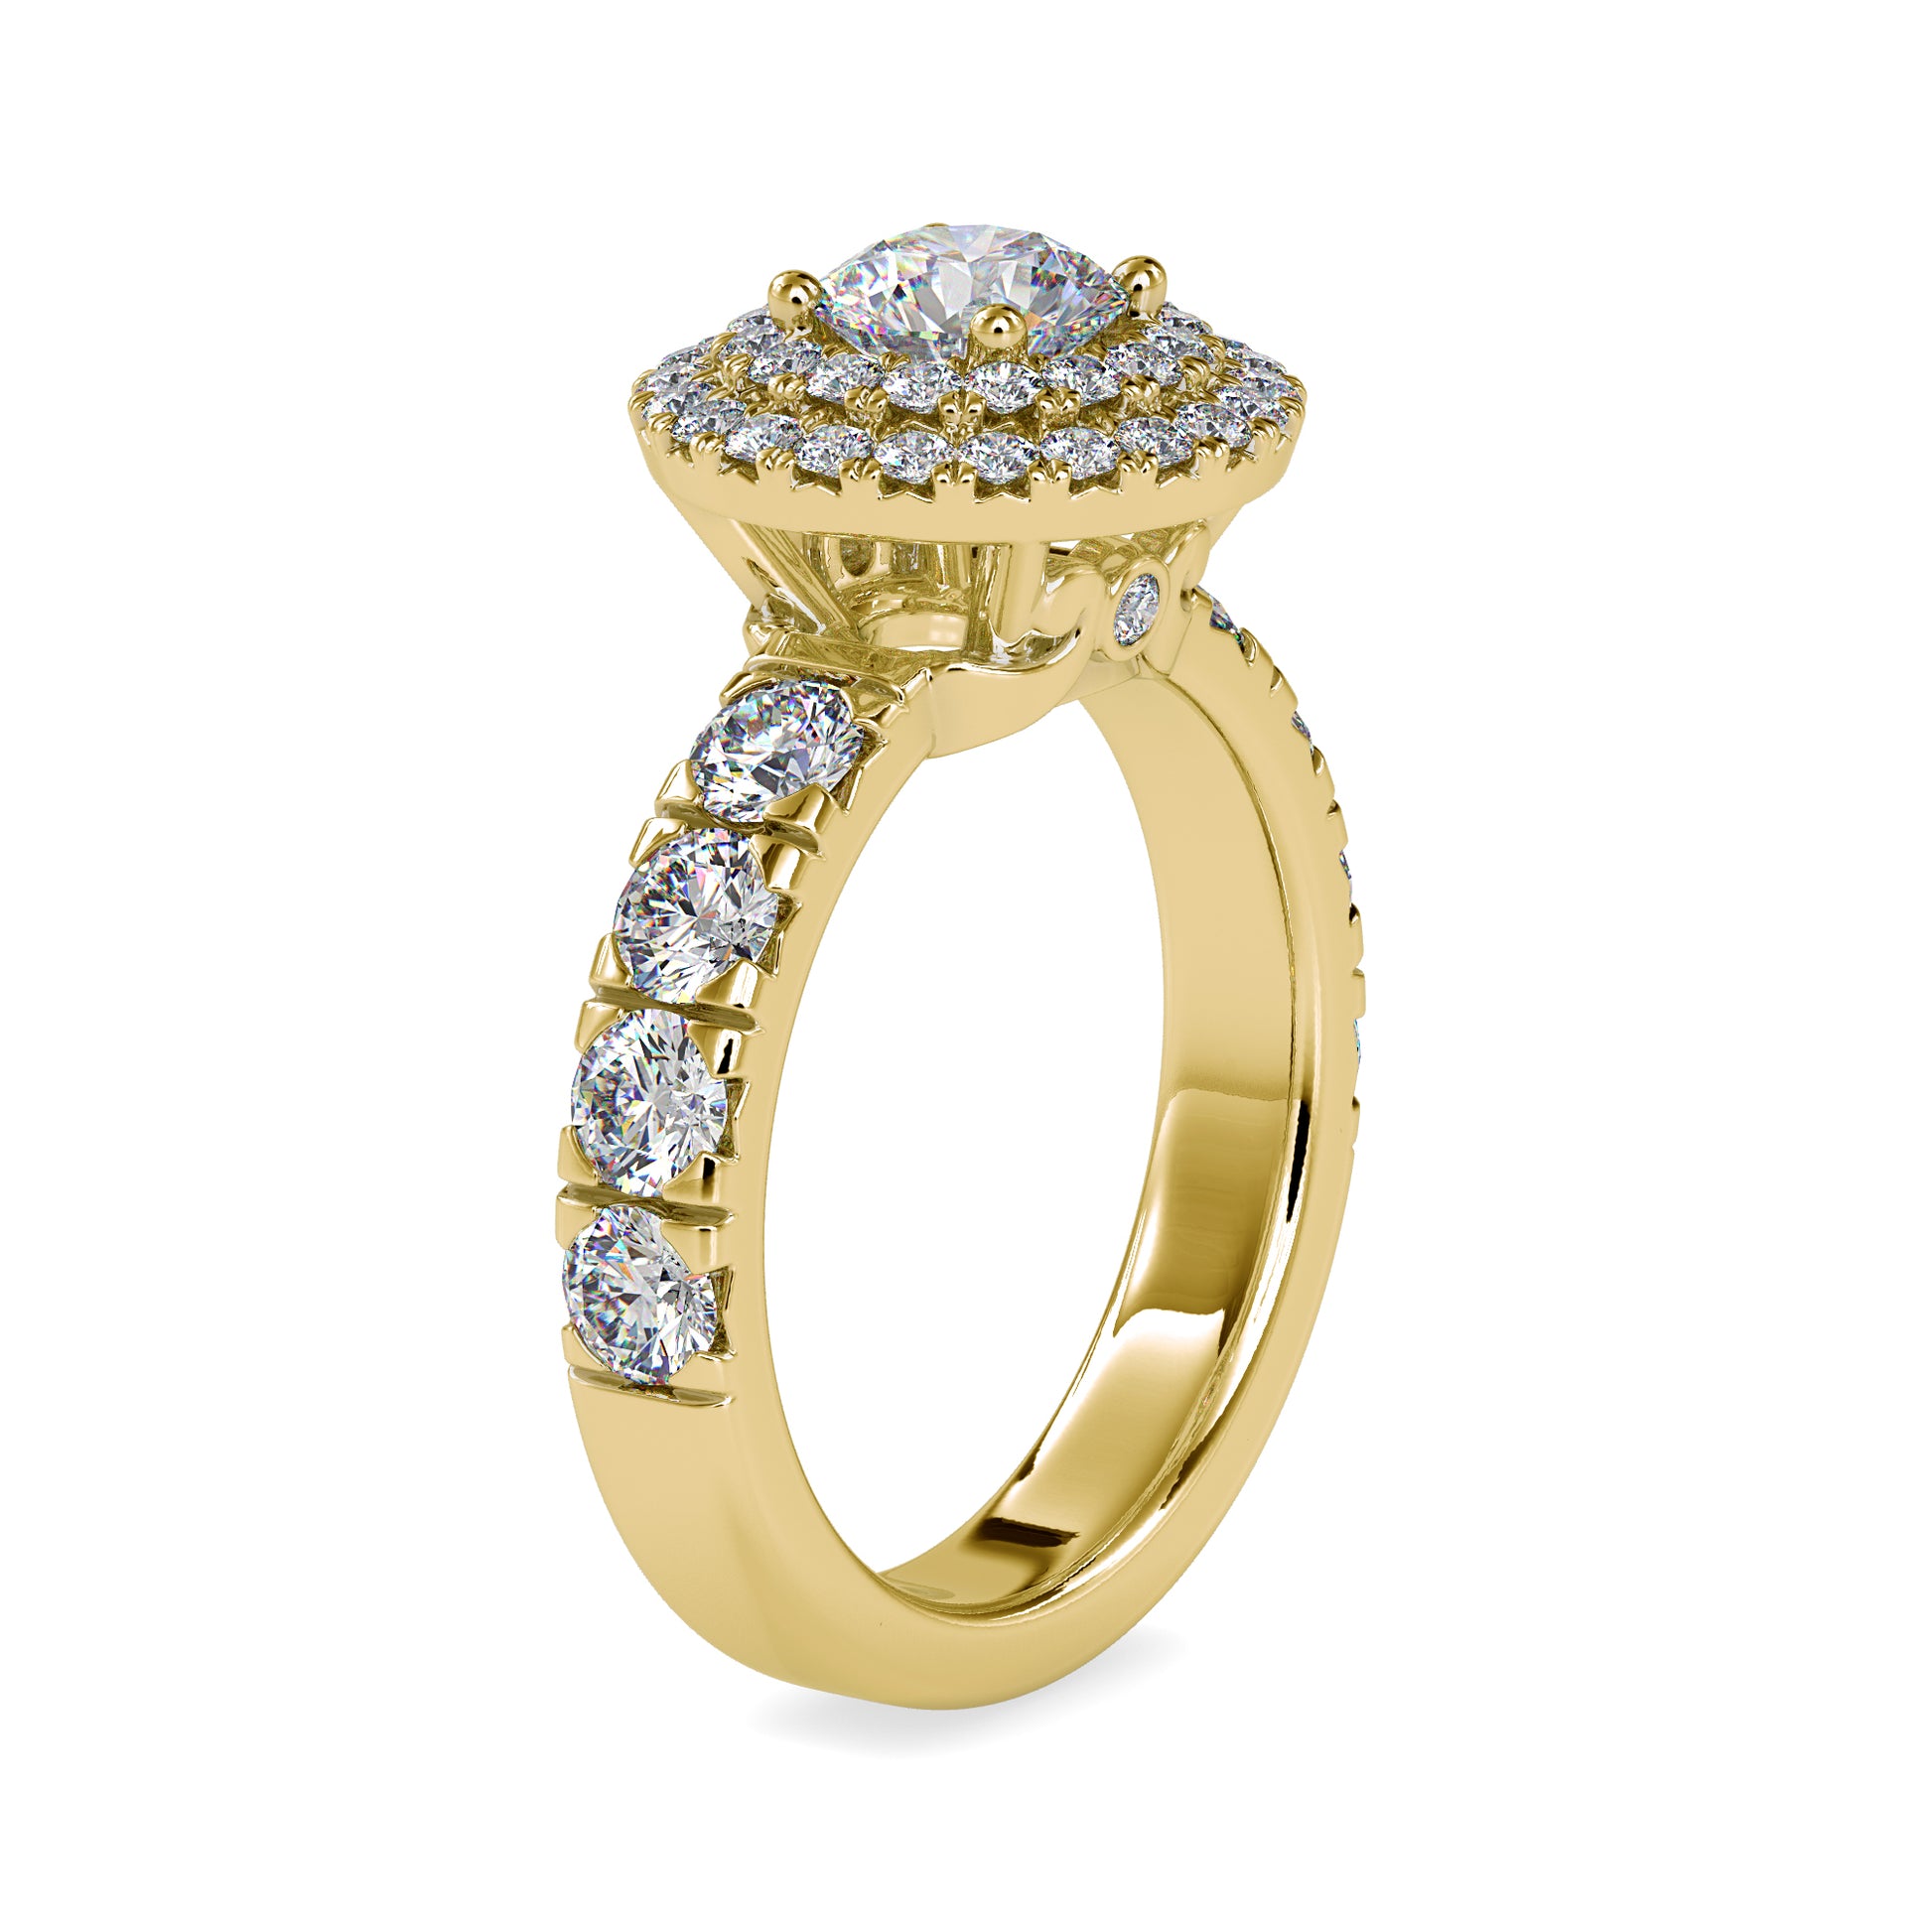 The Venus moissanite diamond Ring - Vai Ra